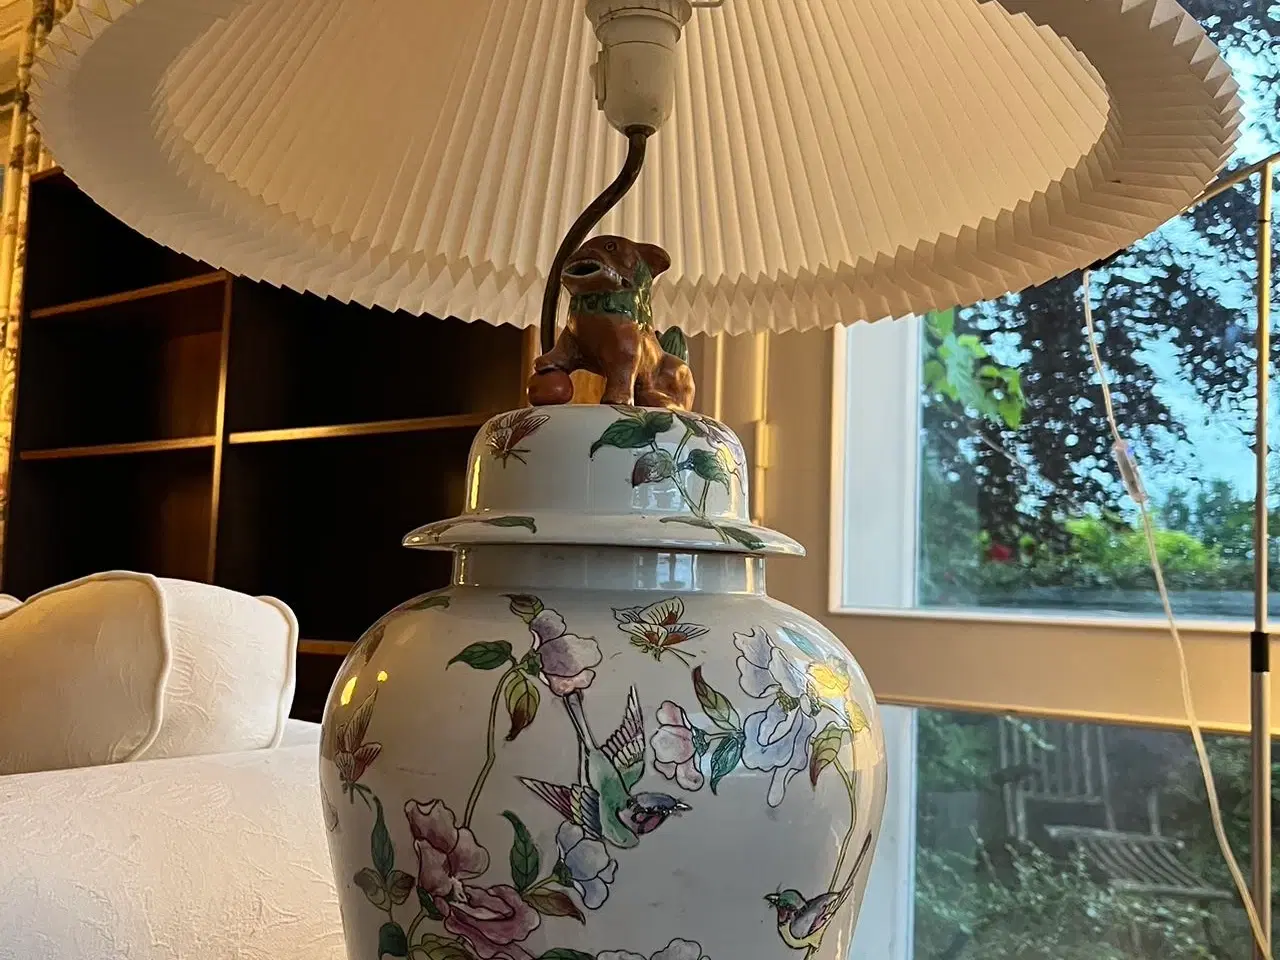 Billede 3 - 2 store kinesiske vaser / lamper med drager.